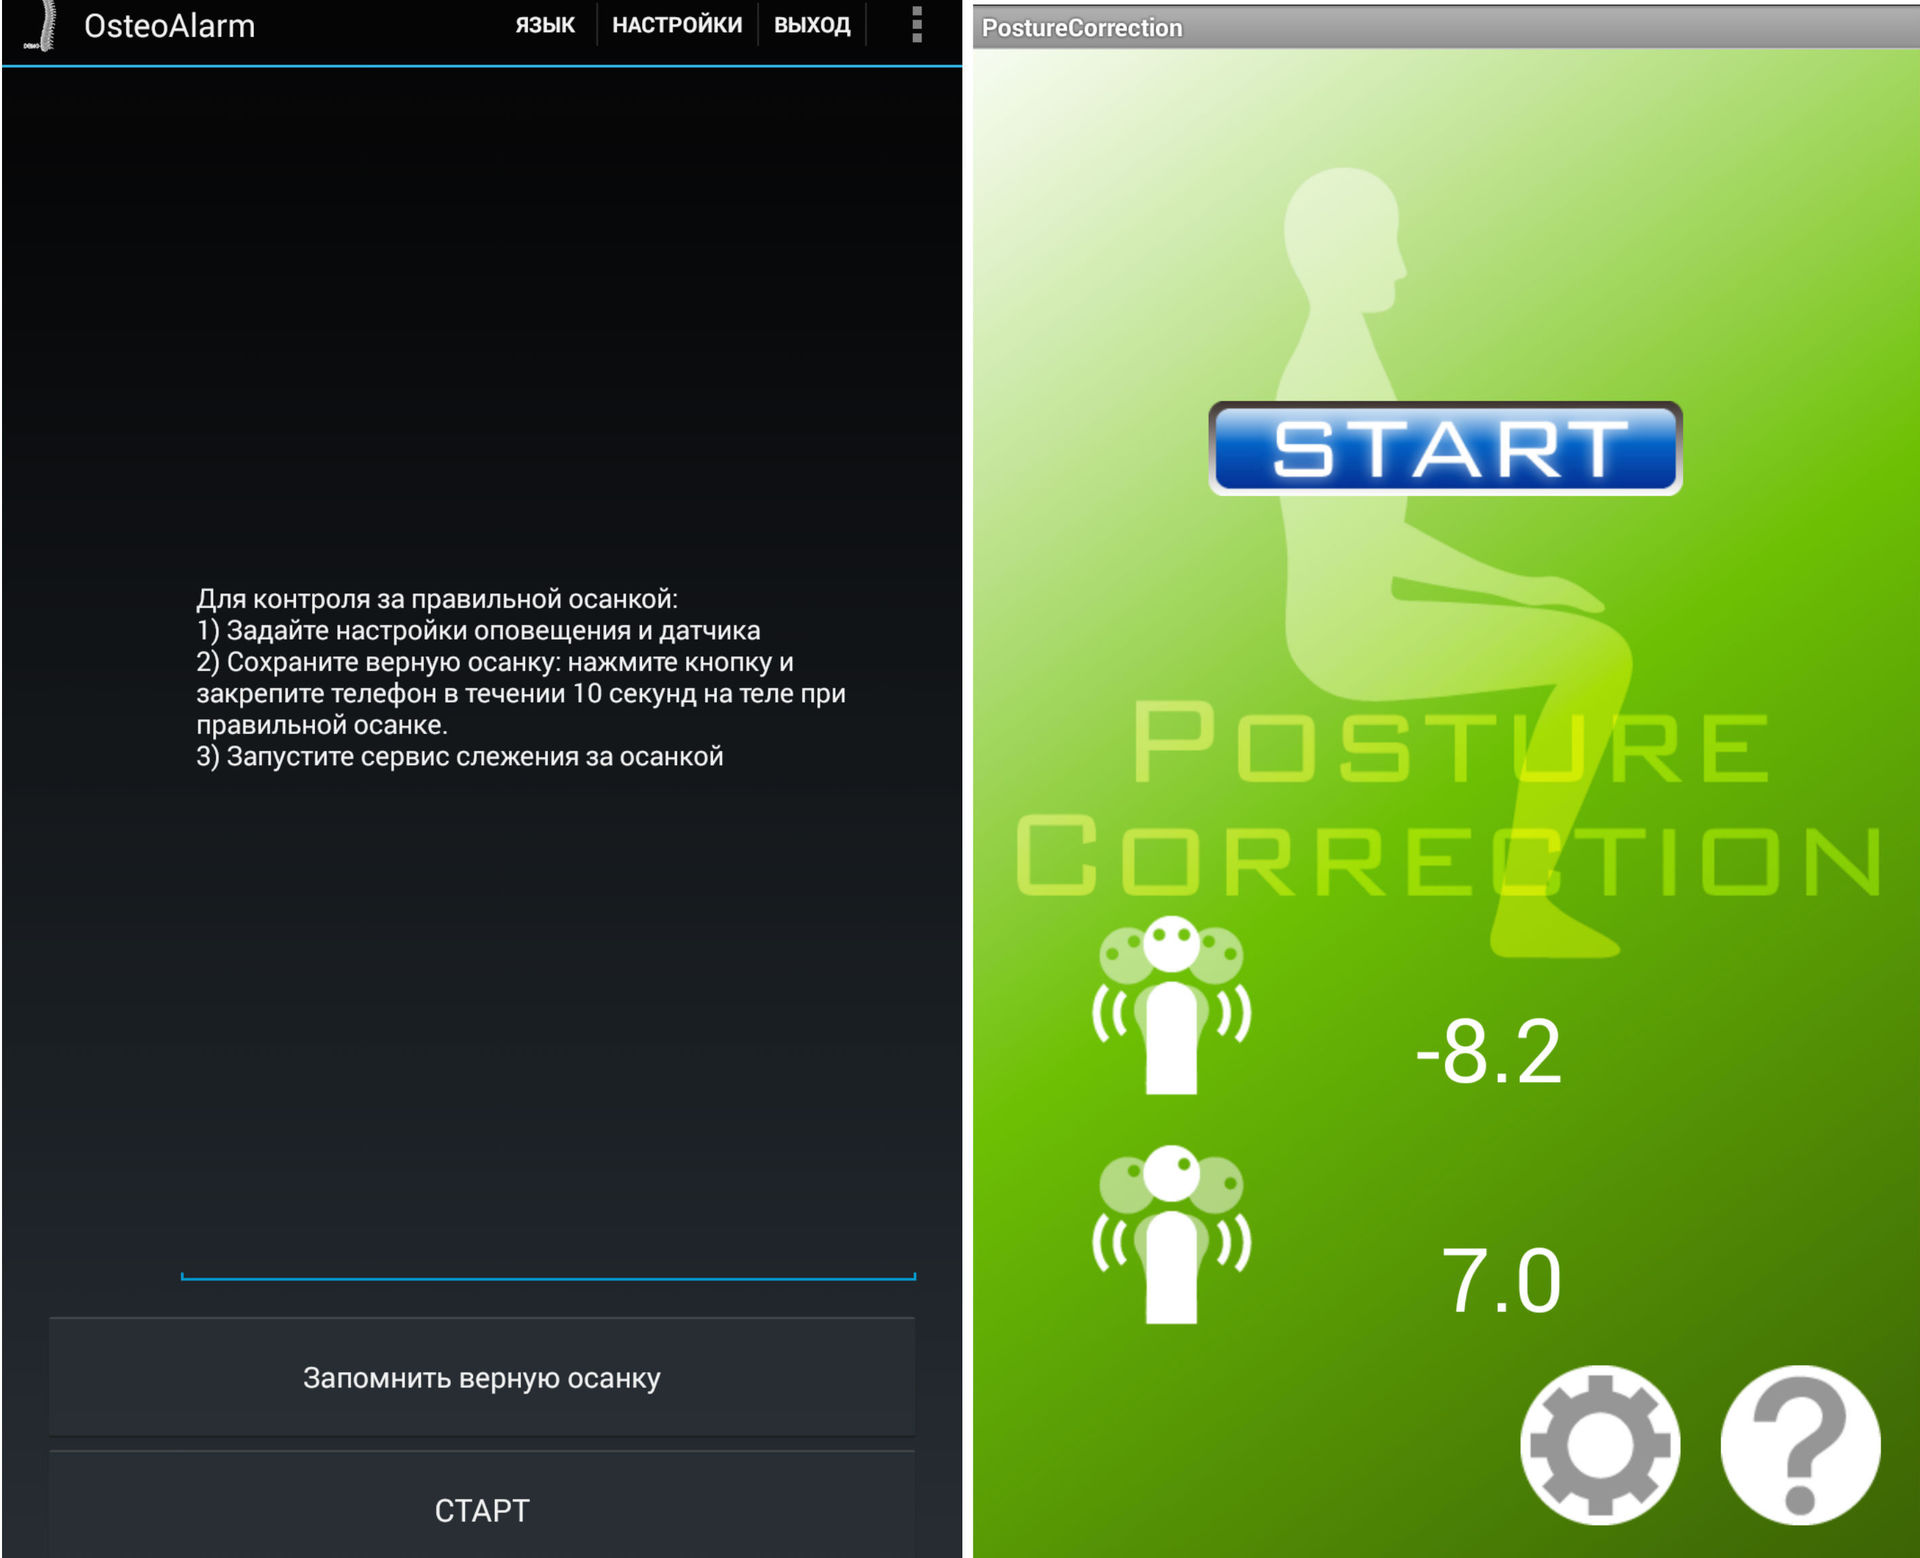 История для позвоночника: обзор корректора осанки Lumo Lift, софта из Google Play и российского «Мастера осанки» - 32